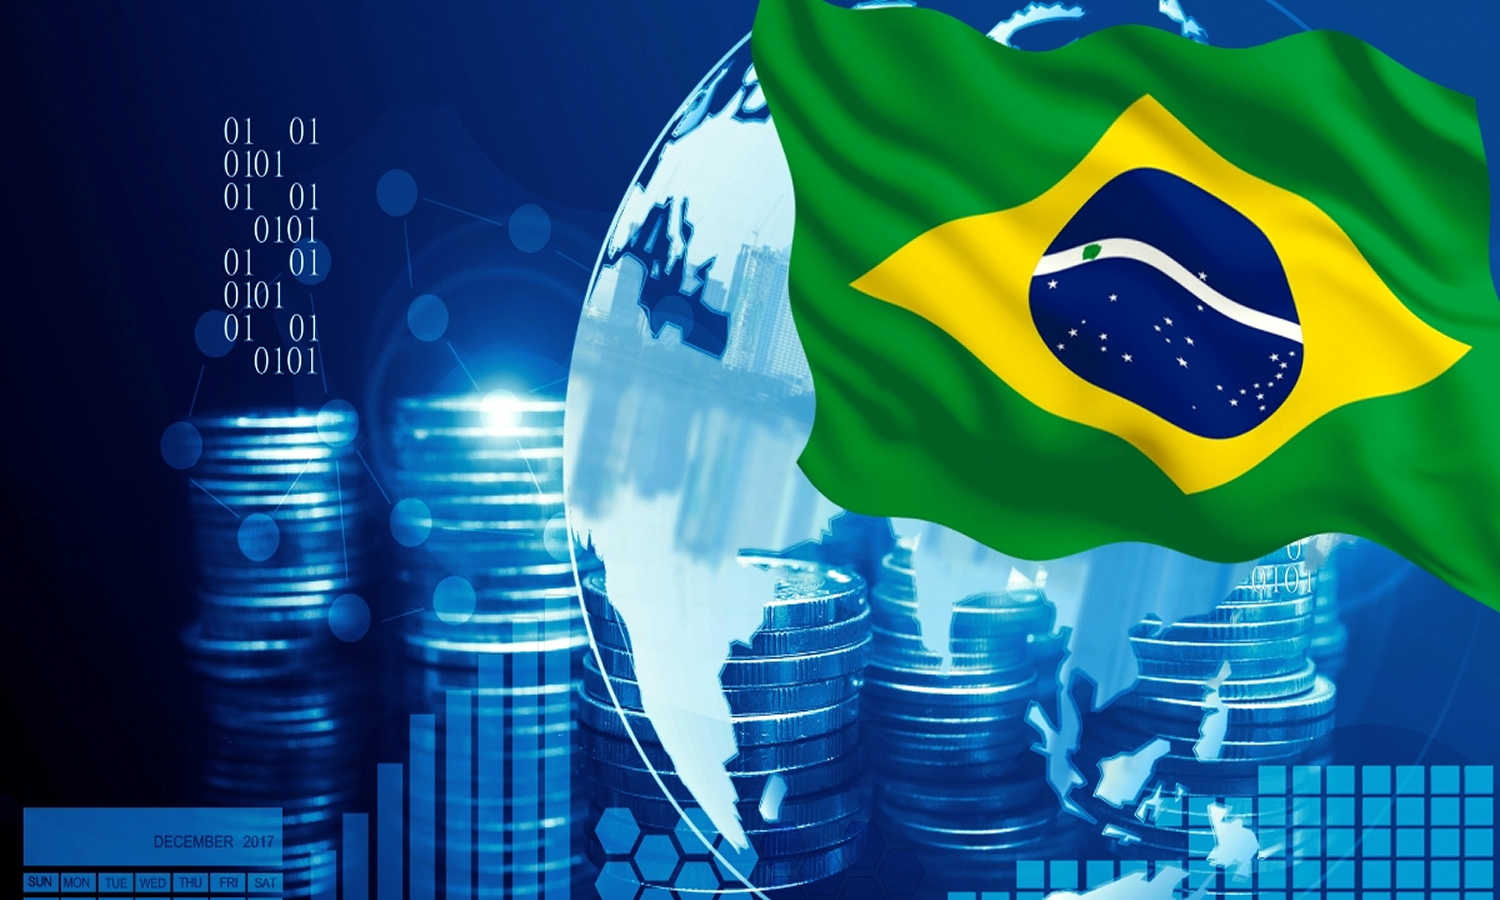 project finance in Brazil